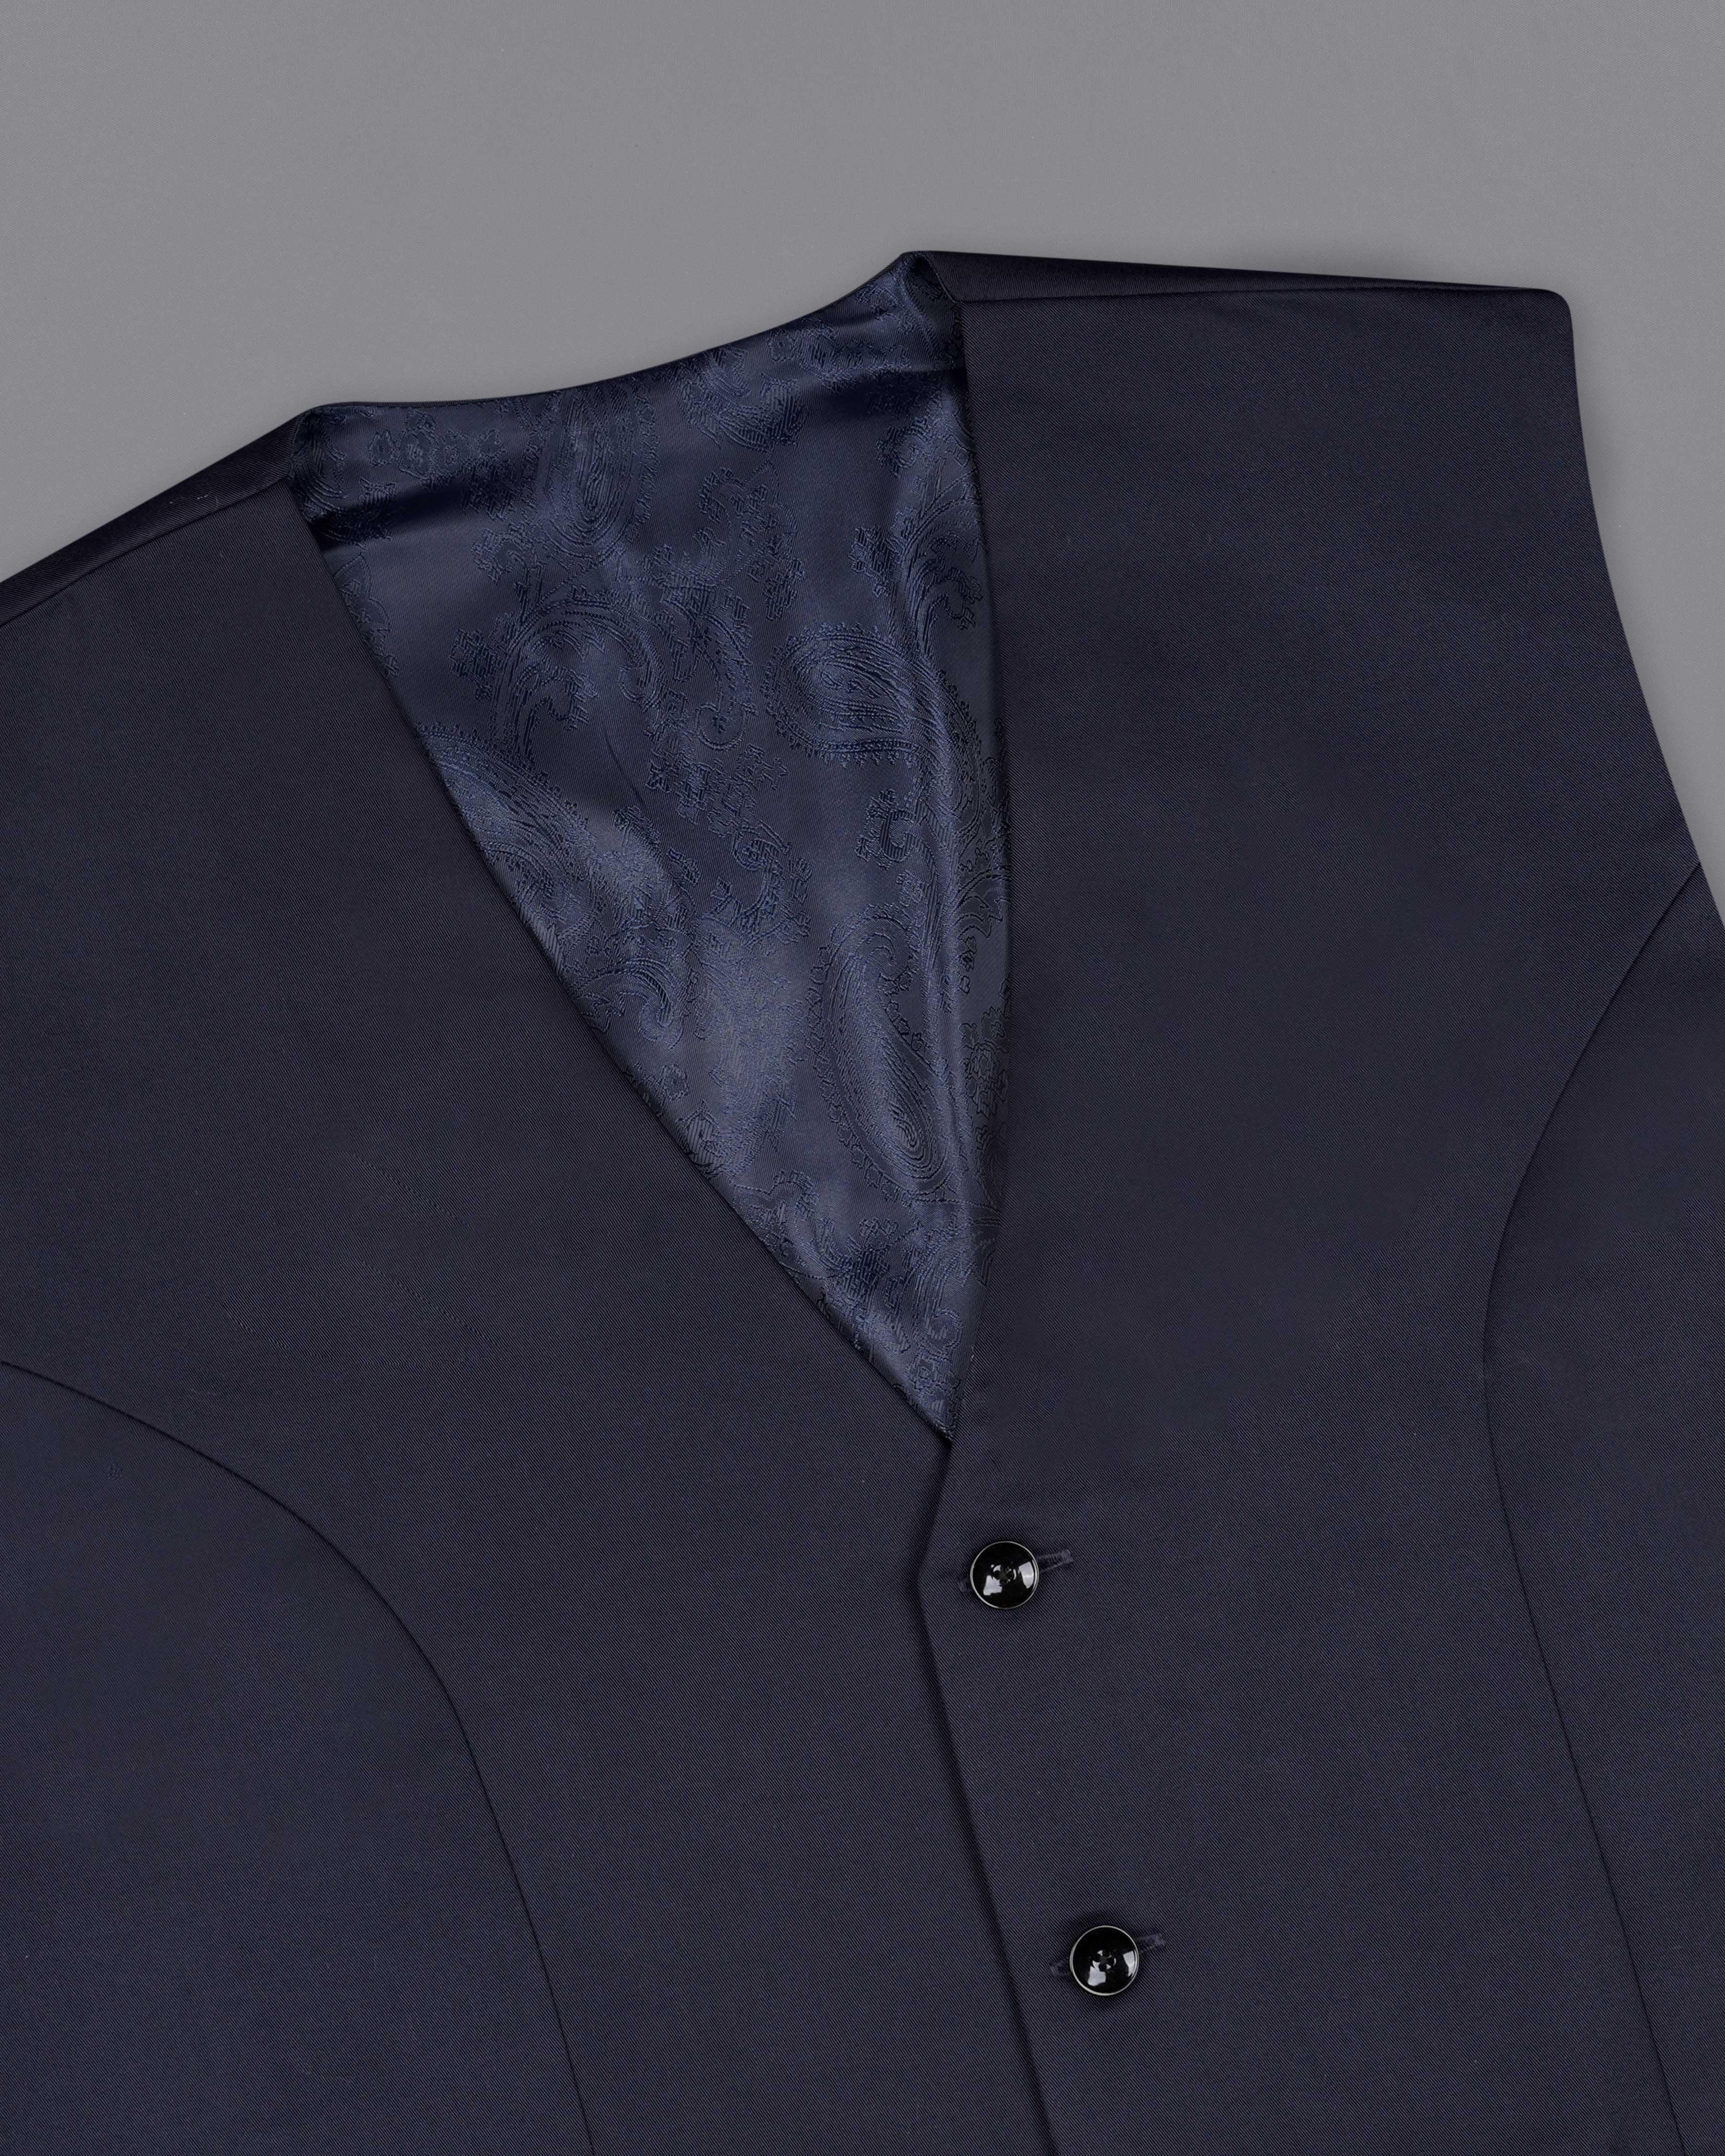 Haiti Blue Single Breasted Suit